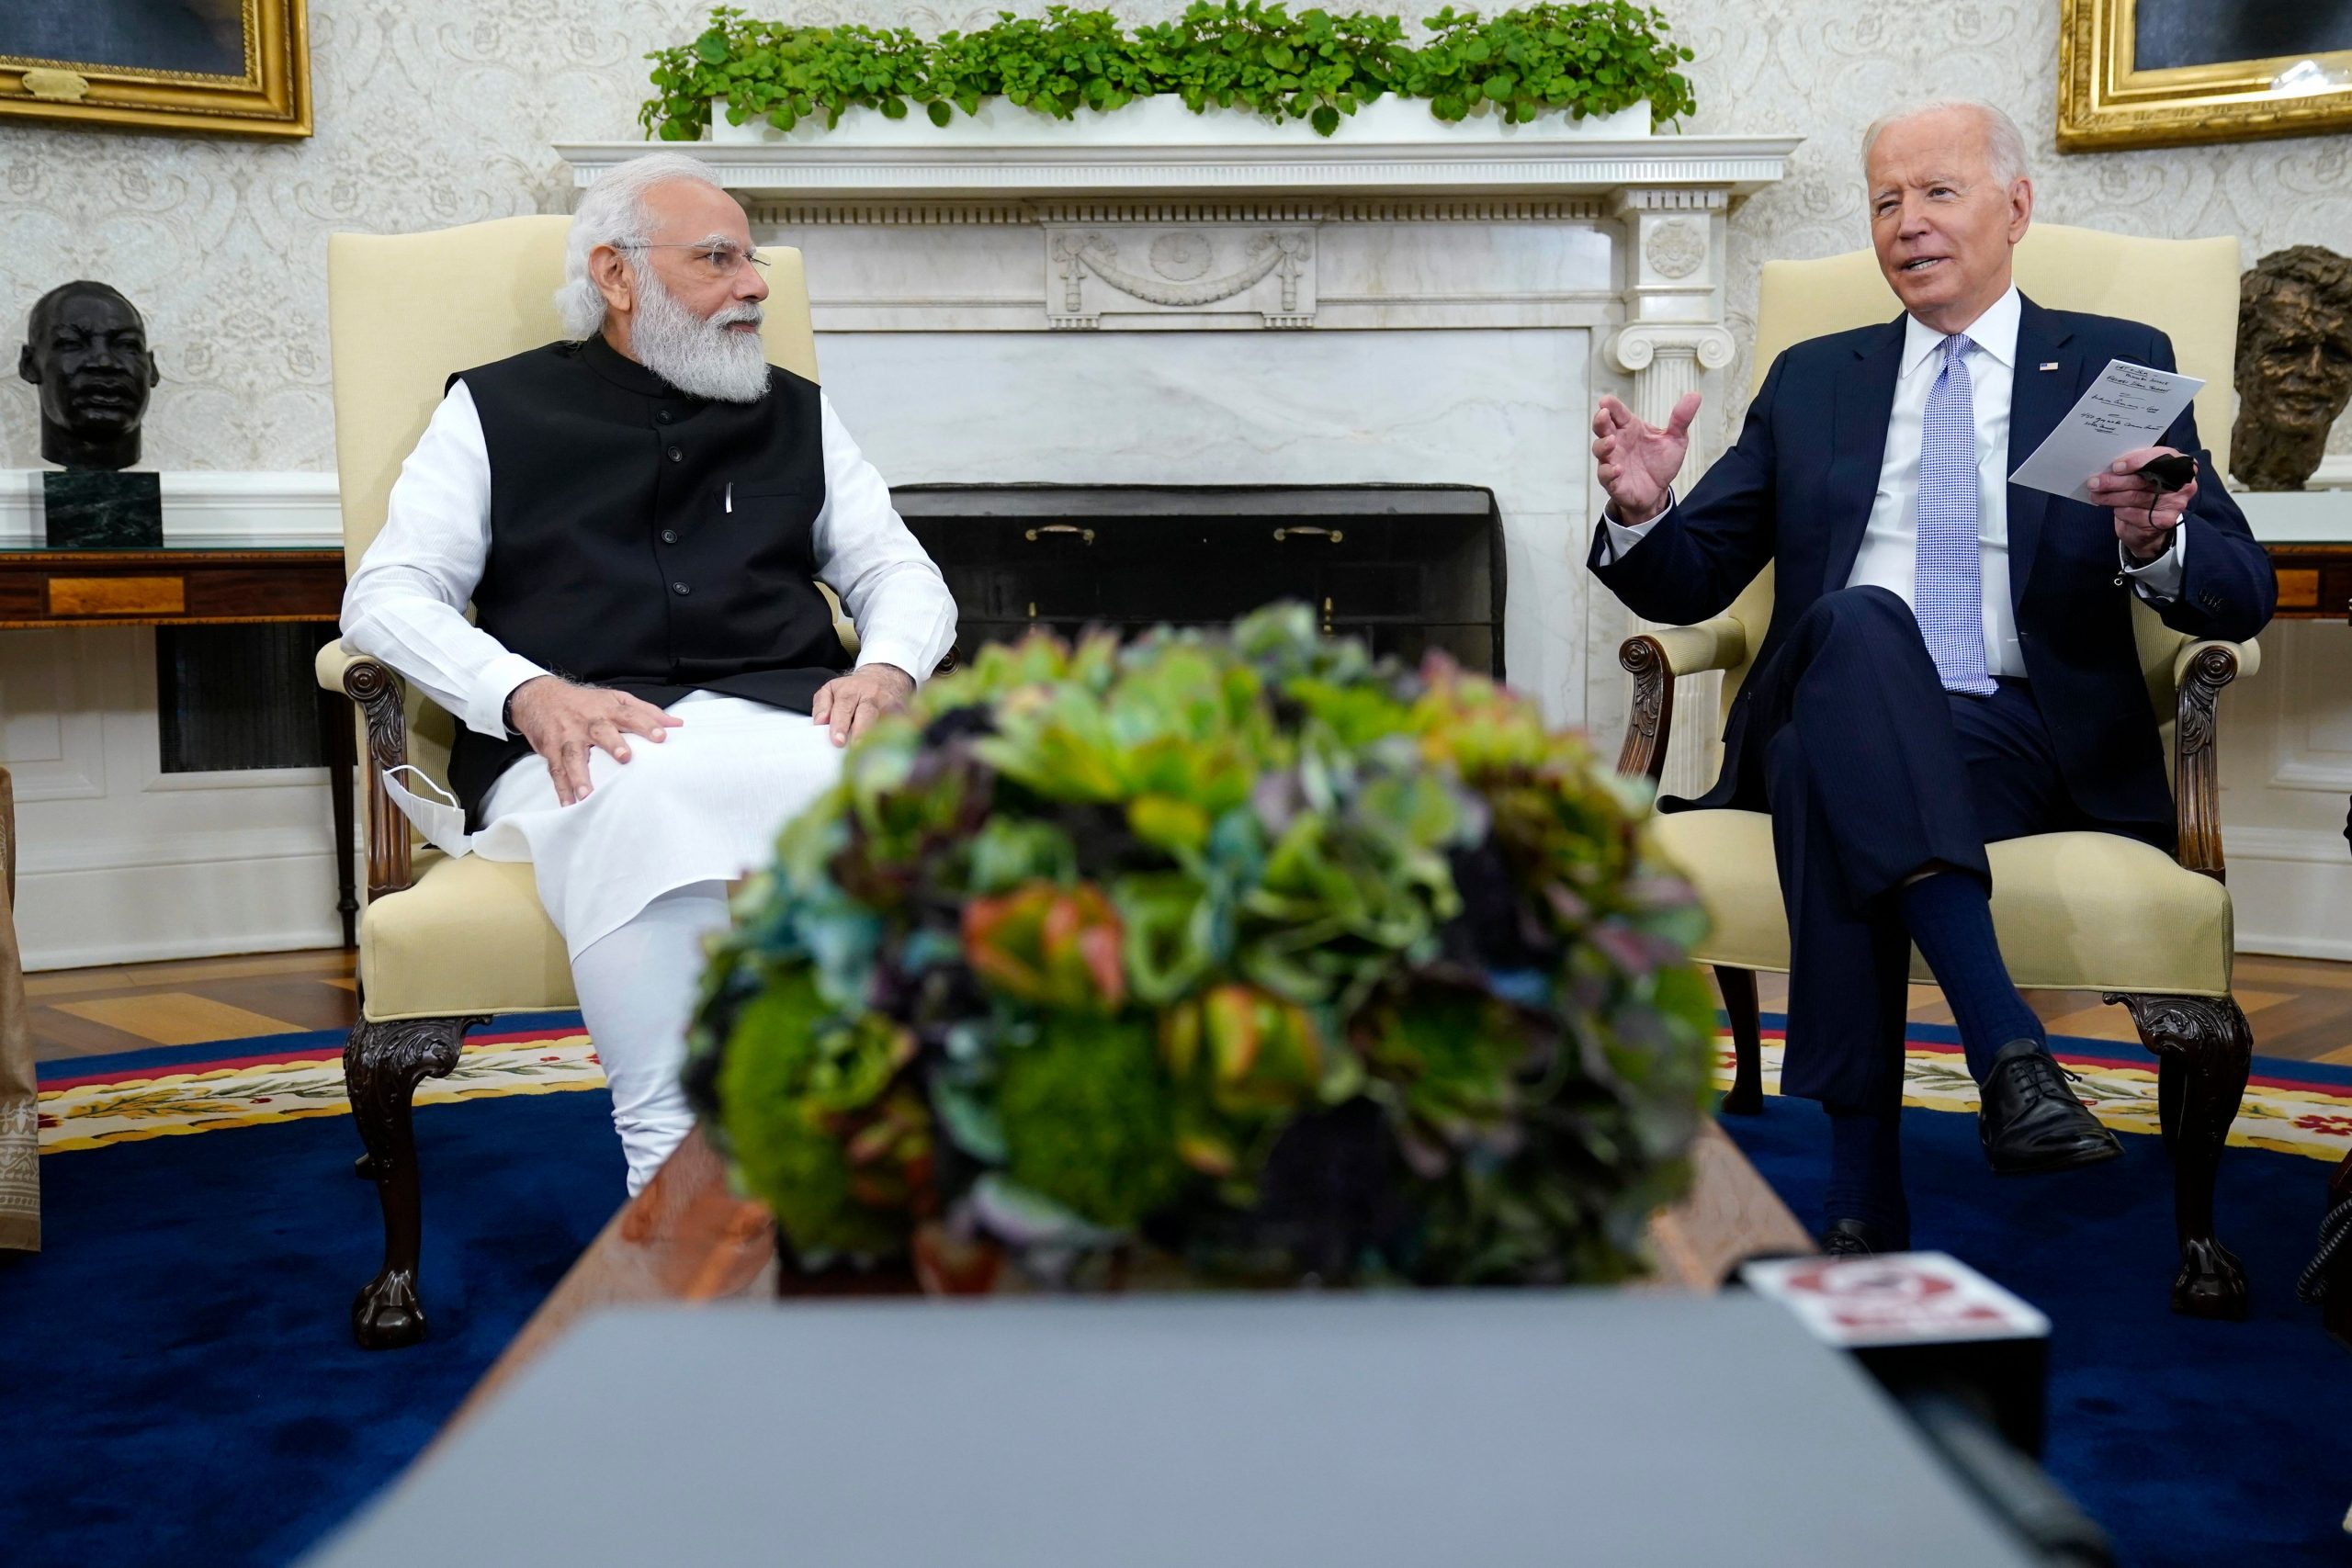 Will Modi talk Ukraine with Biden or stay mum?